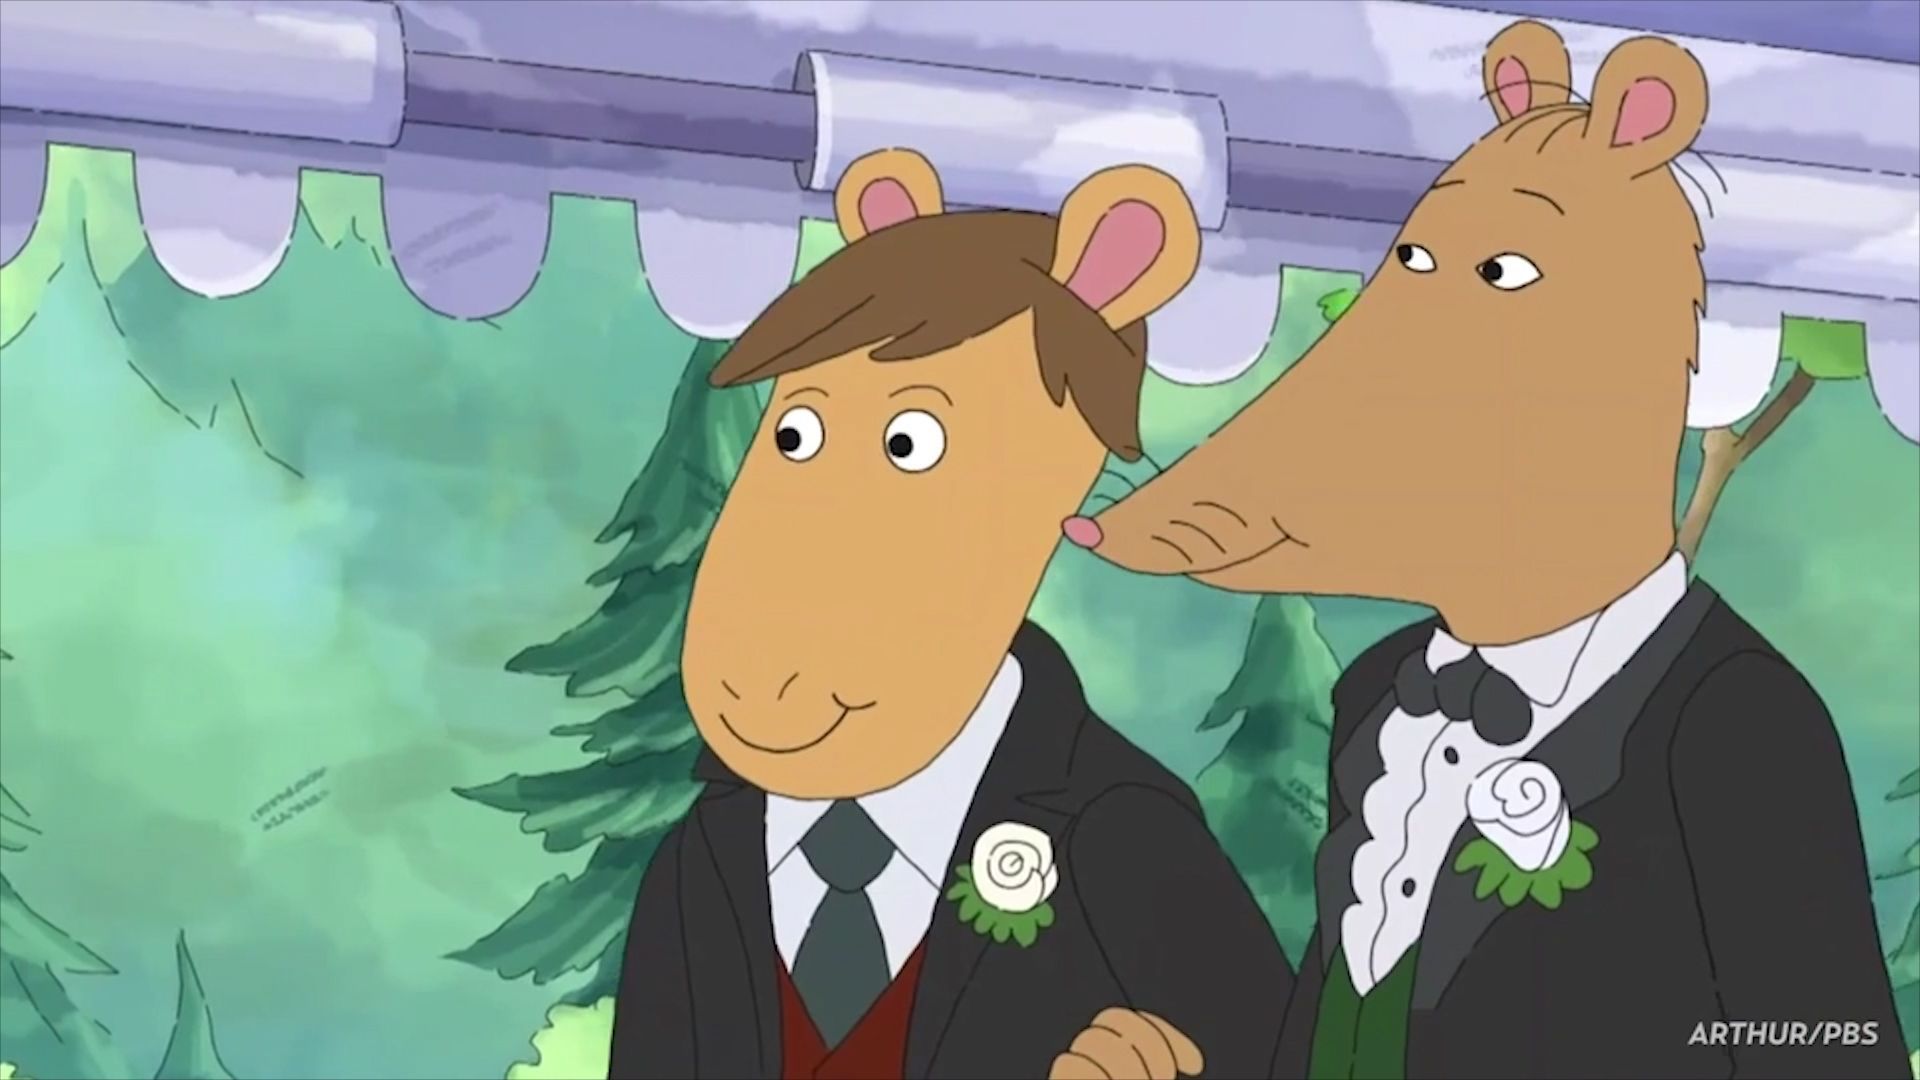 Alabamská veřejnoprávní televize stáhla z vysílání animovaný seriál Arthur kvůli svatbě gayů.